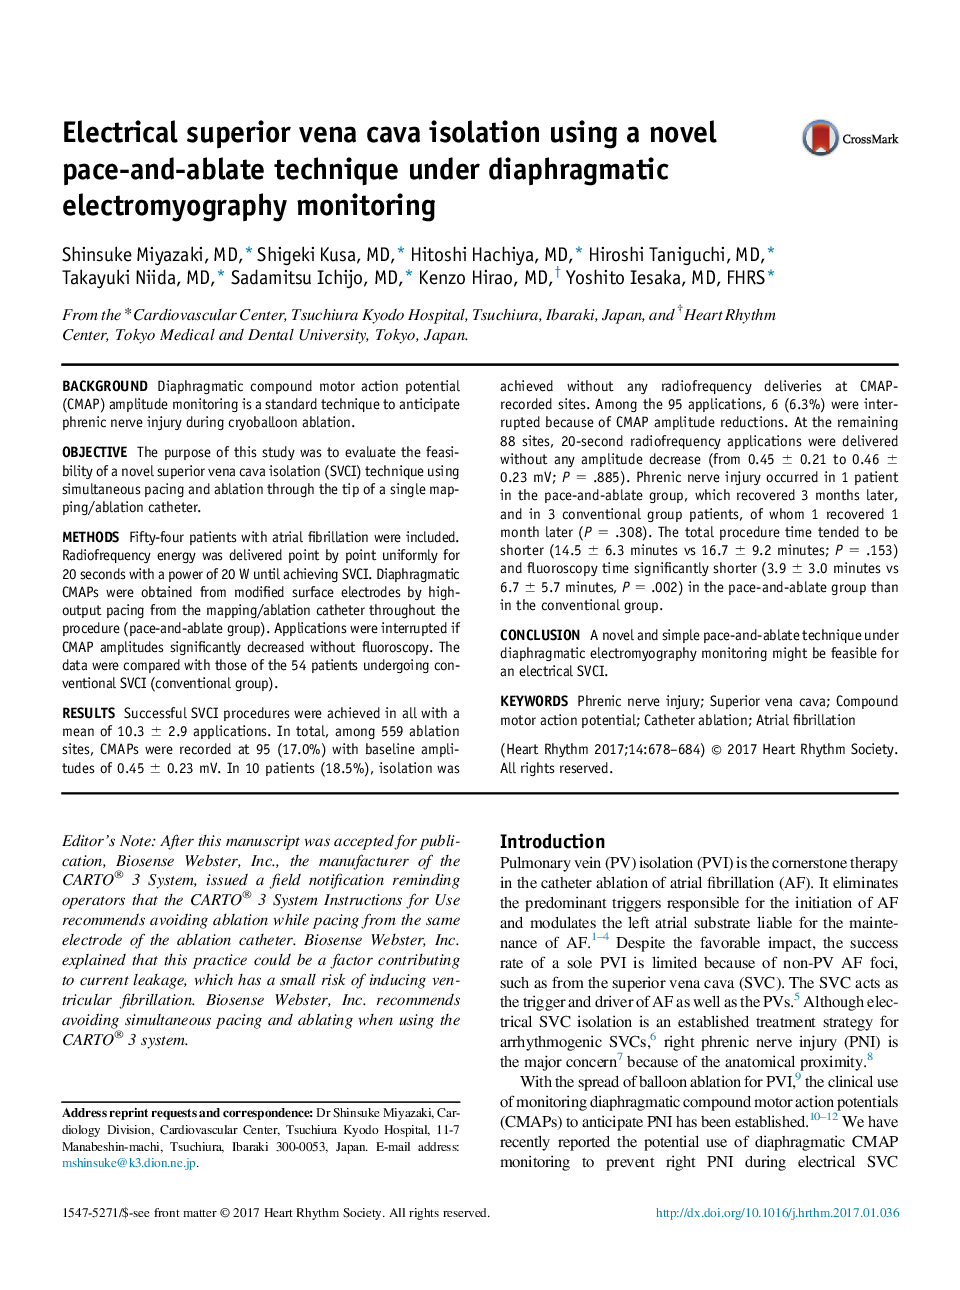 جداسازی الکتریکی فوقانی وینا کوا با استفاده از تکنیک تکرار و تکرار تحت نظارت الکترومیوگرافی دیافراگمی 